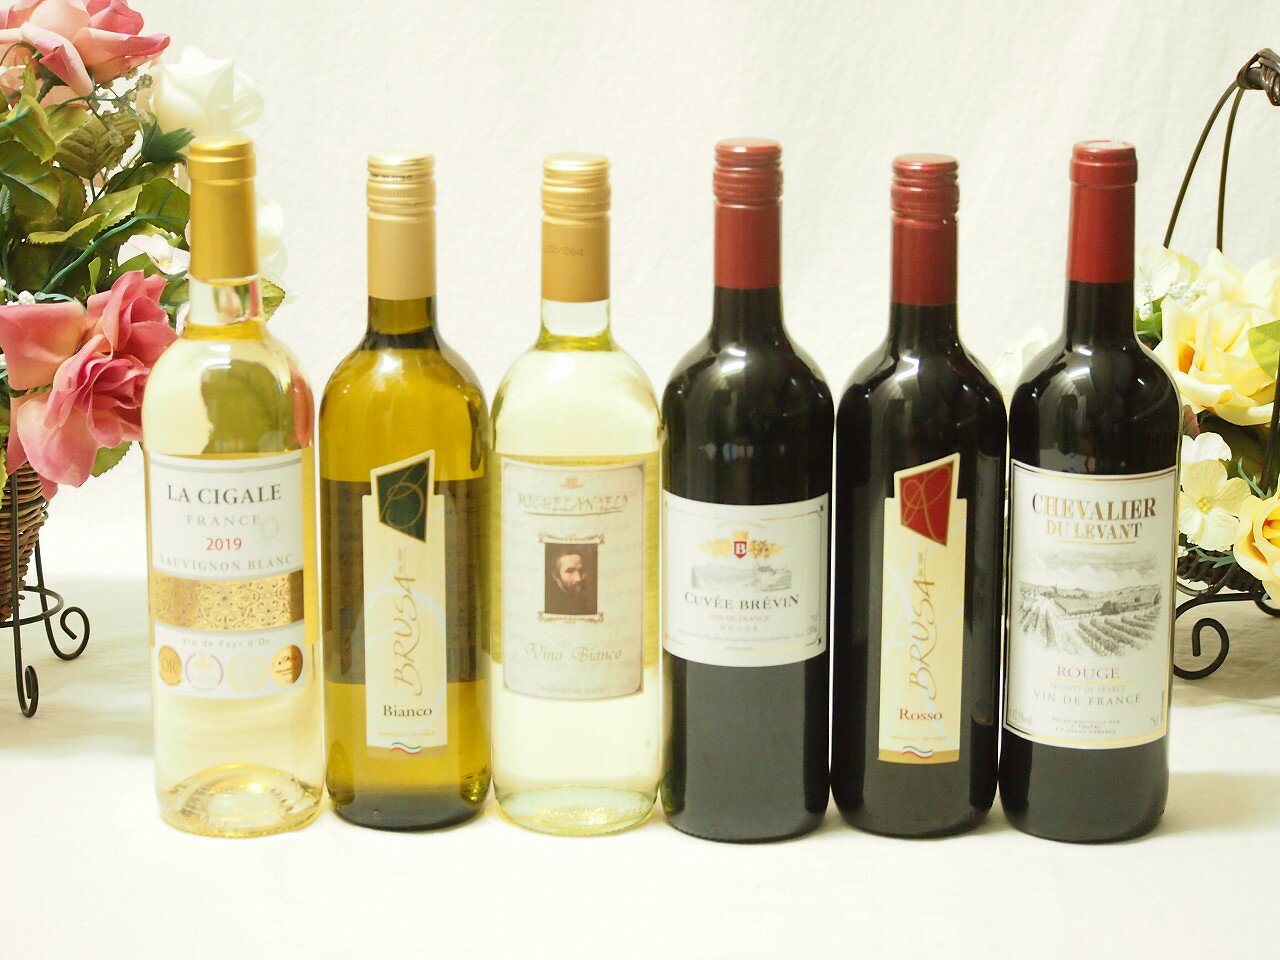 金賞受賞酒の入ったセレクションワイン6本セット（赤3本、白3本）750ml×6本